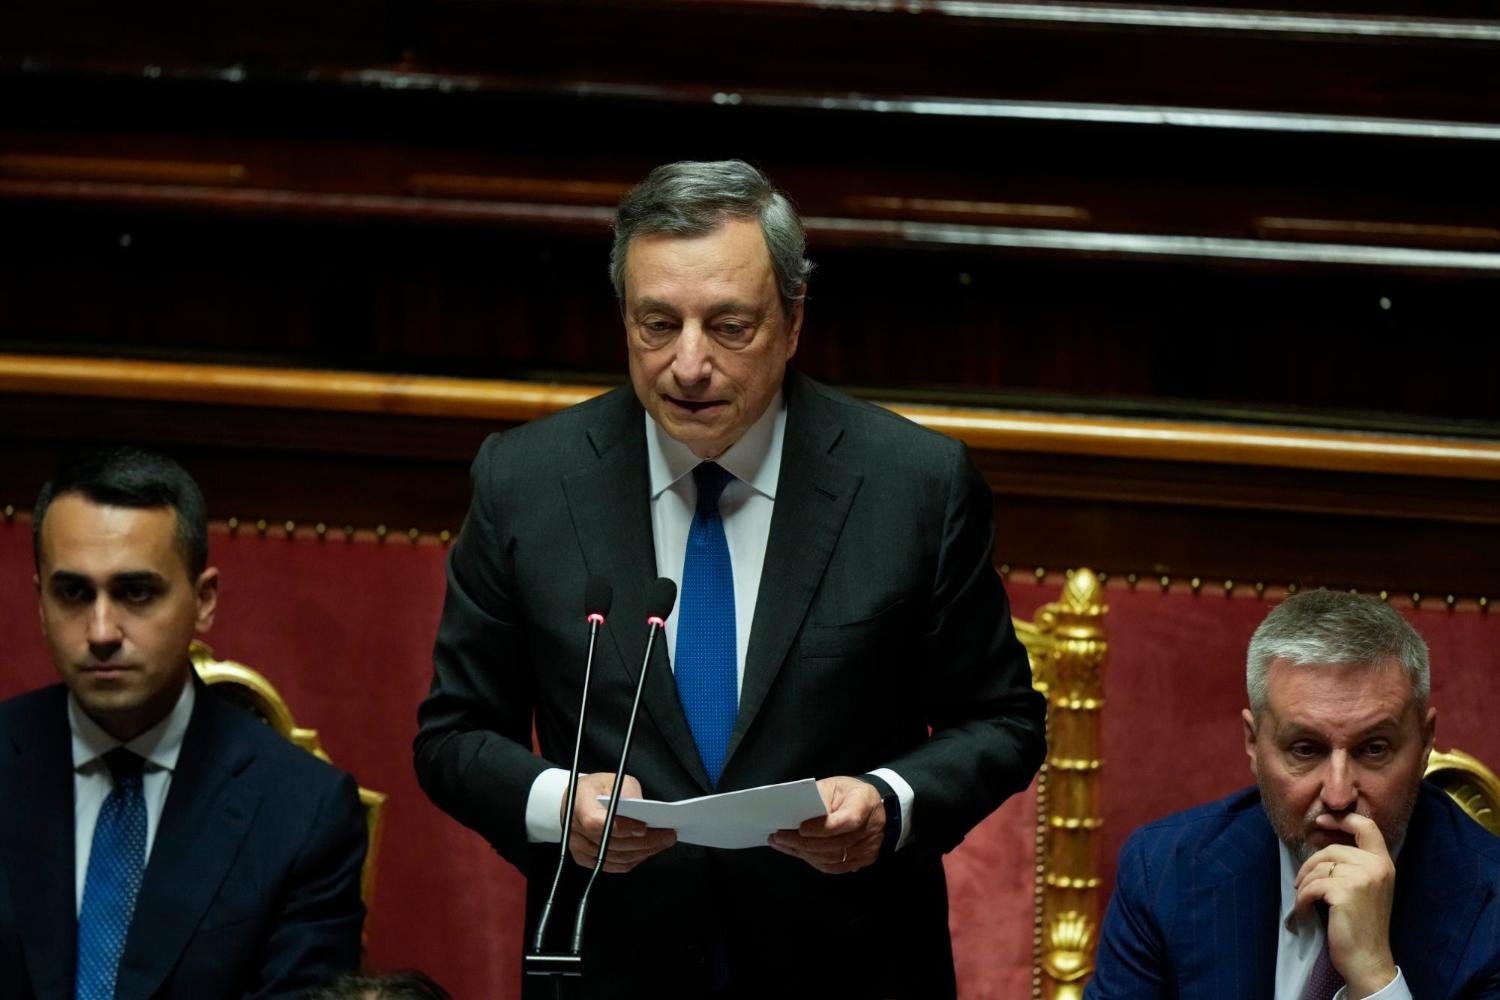 Ιταλία πολιτική κρίση: “Η κυβερνητική συμμαχία μπορεί να οικοδομηθεί”, λέει ο Ντράγκι